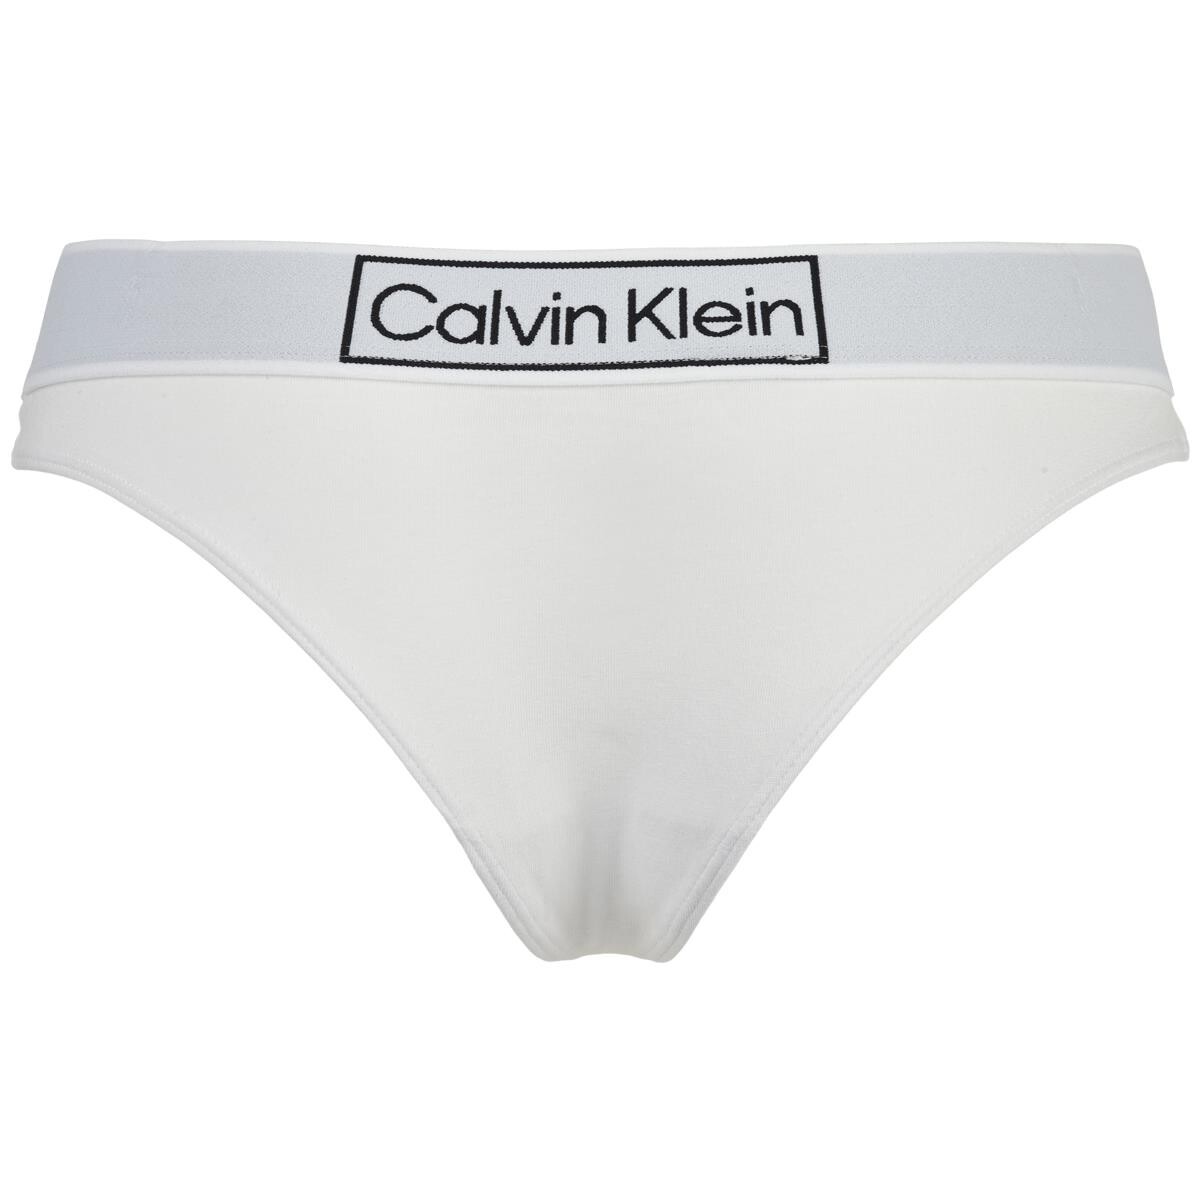 Calvin Klein kvinder • Shop dine favoritter emci.dk